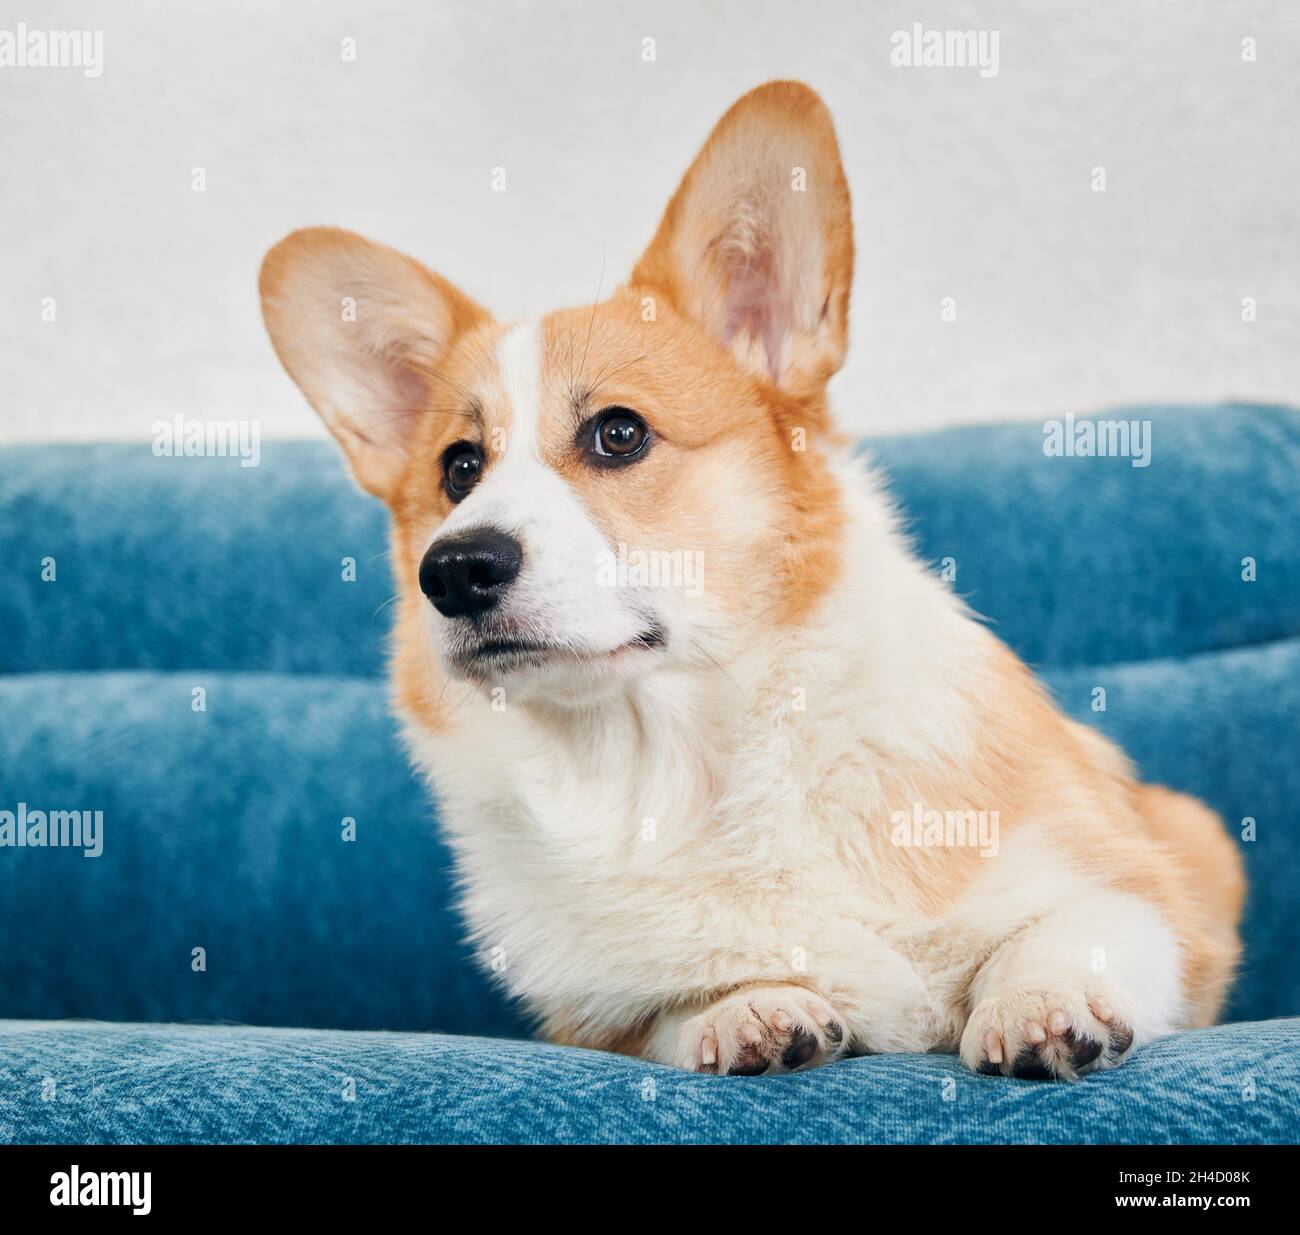 Gros plan de beau chien Corgi rouge et blanc reposant sur un canapé bleu confortable.Corgi gallois mignon regardant de côté avec curiosité tout en se reposant sur un canapé.Concept d'animaux de compagnie. Banque D'Images